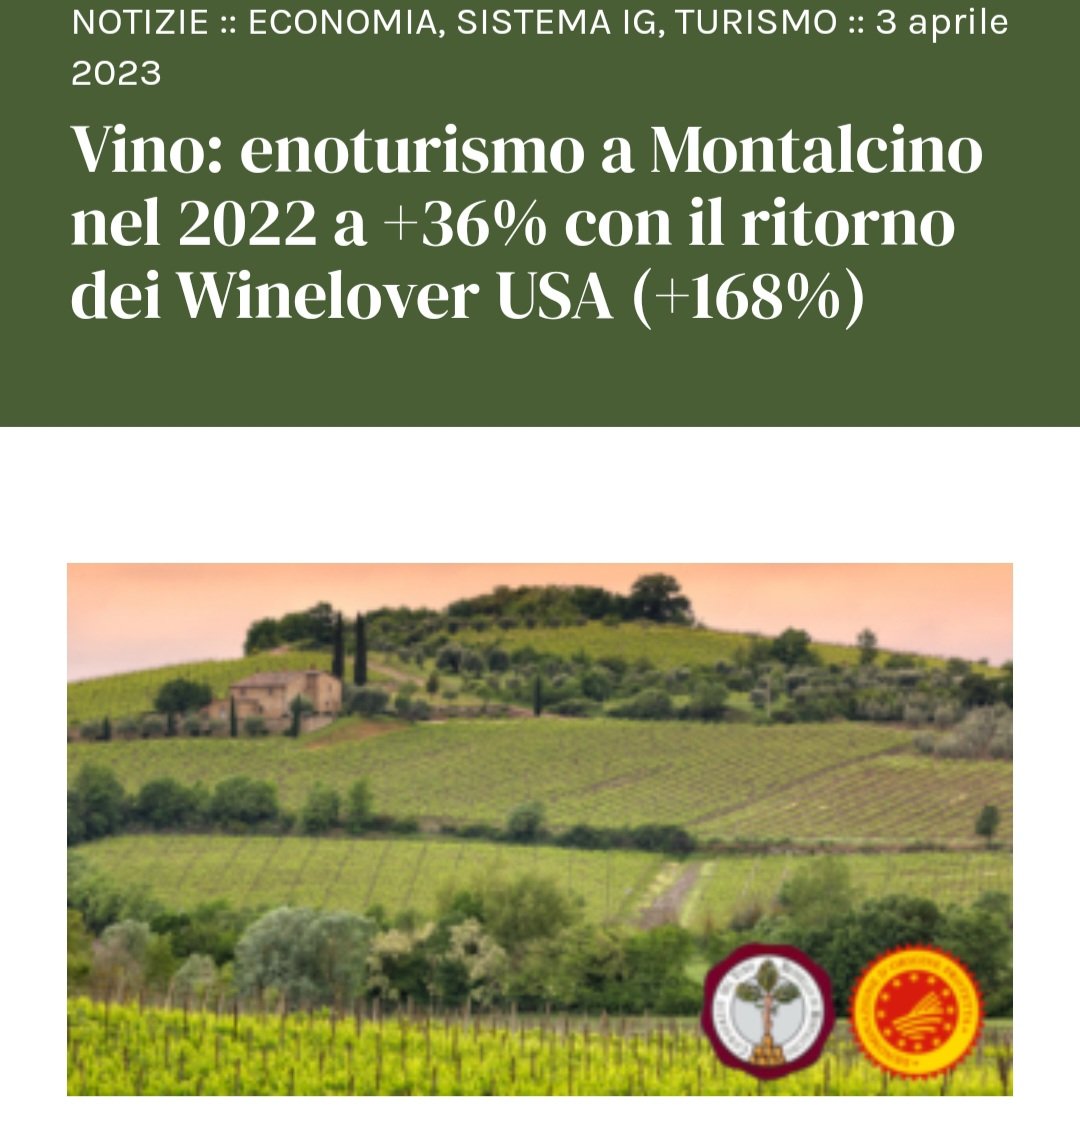 #Enoturismo a Montalcino nel 2022 a +36% con il ritorno dei Winelover USA (+168%). Presenze superiori anche al pre-Covid (+16%). 
Bindocci, Pres. @ConsBrunello
'enoturismo asset straordinario per imprese del vino e del turismo' @fqualivita @VinitalyTasting #Montalcino #Toscana 🍇